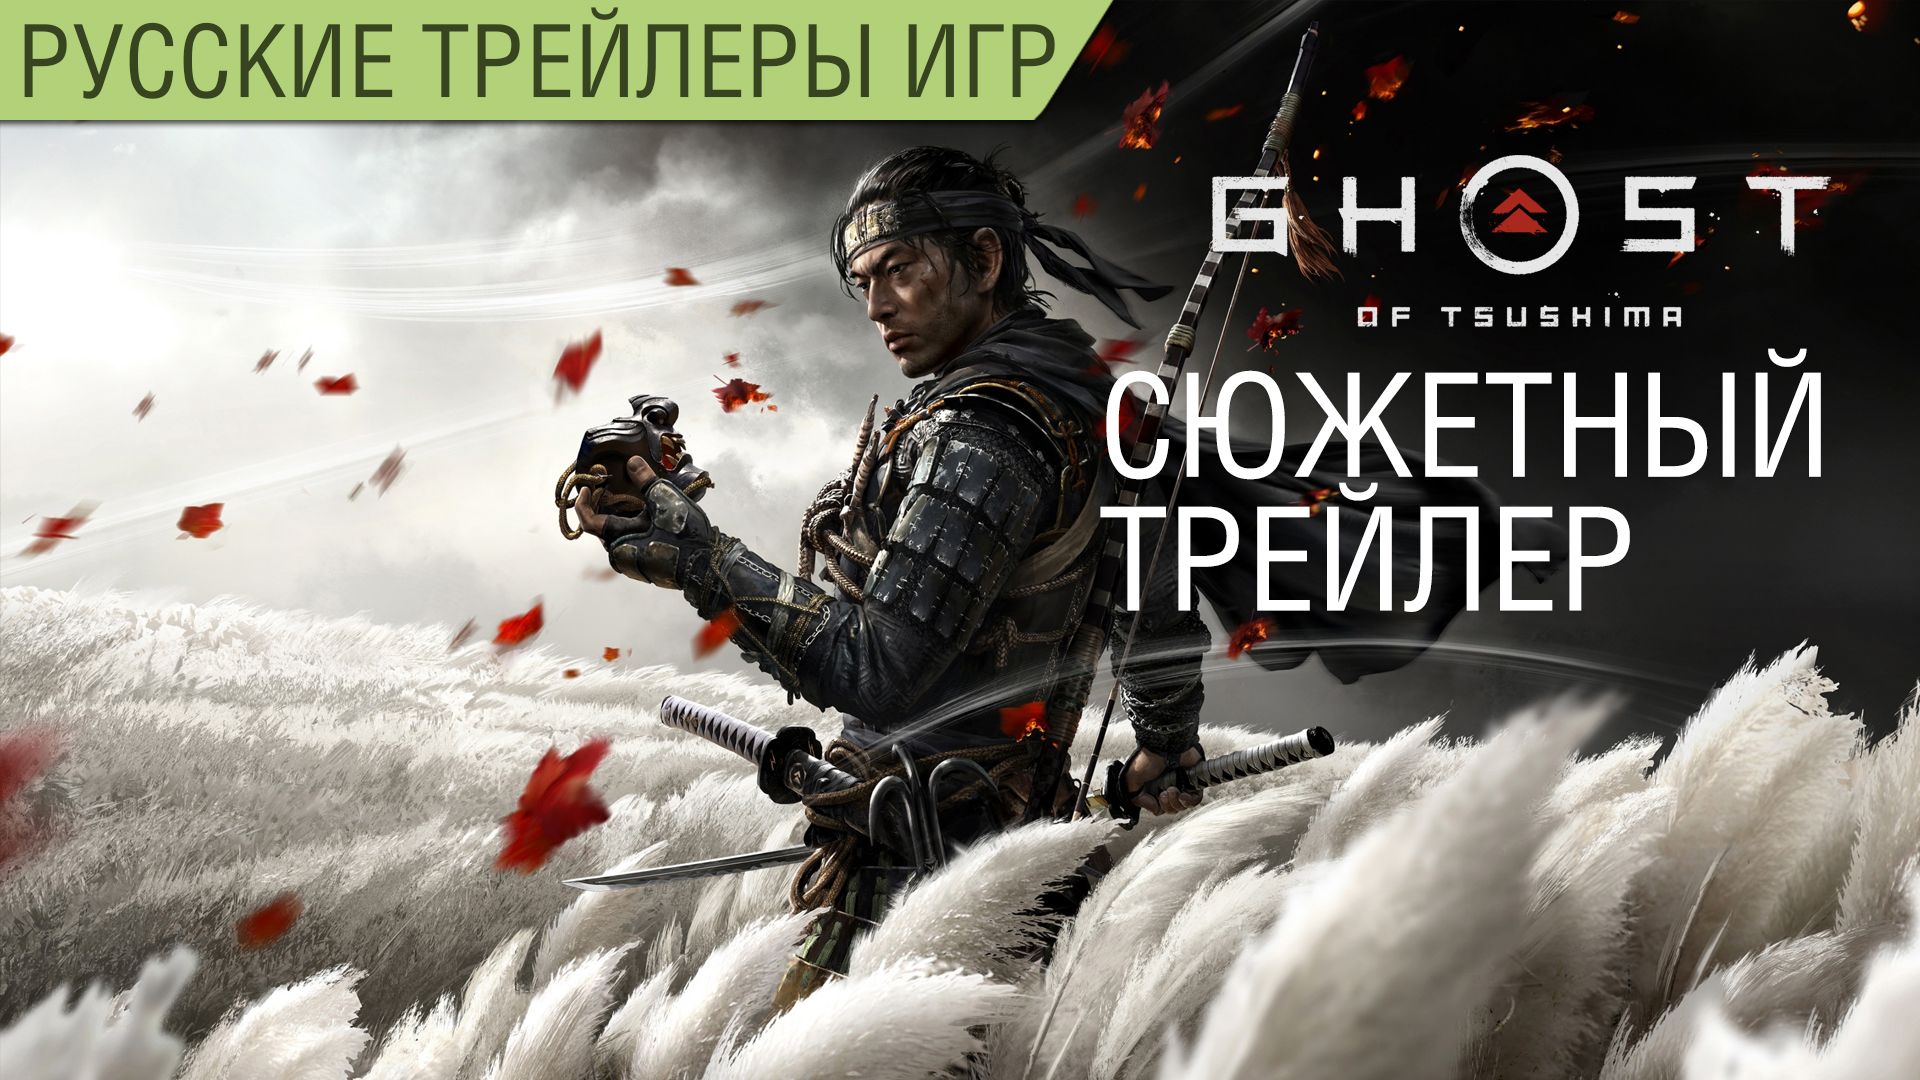 Призрак Цусимы (Ghost of Tsushima) - Сюжетный трейлер на русском